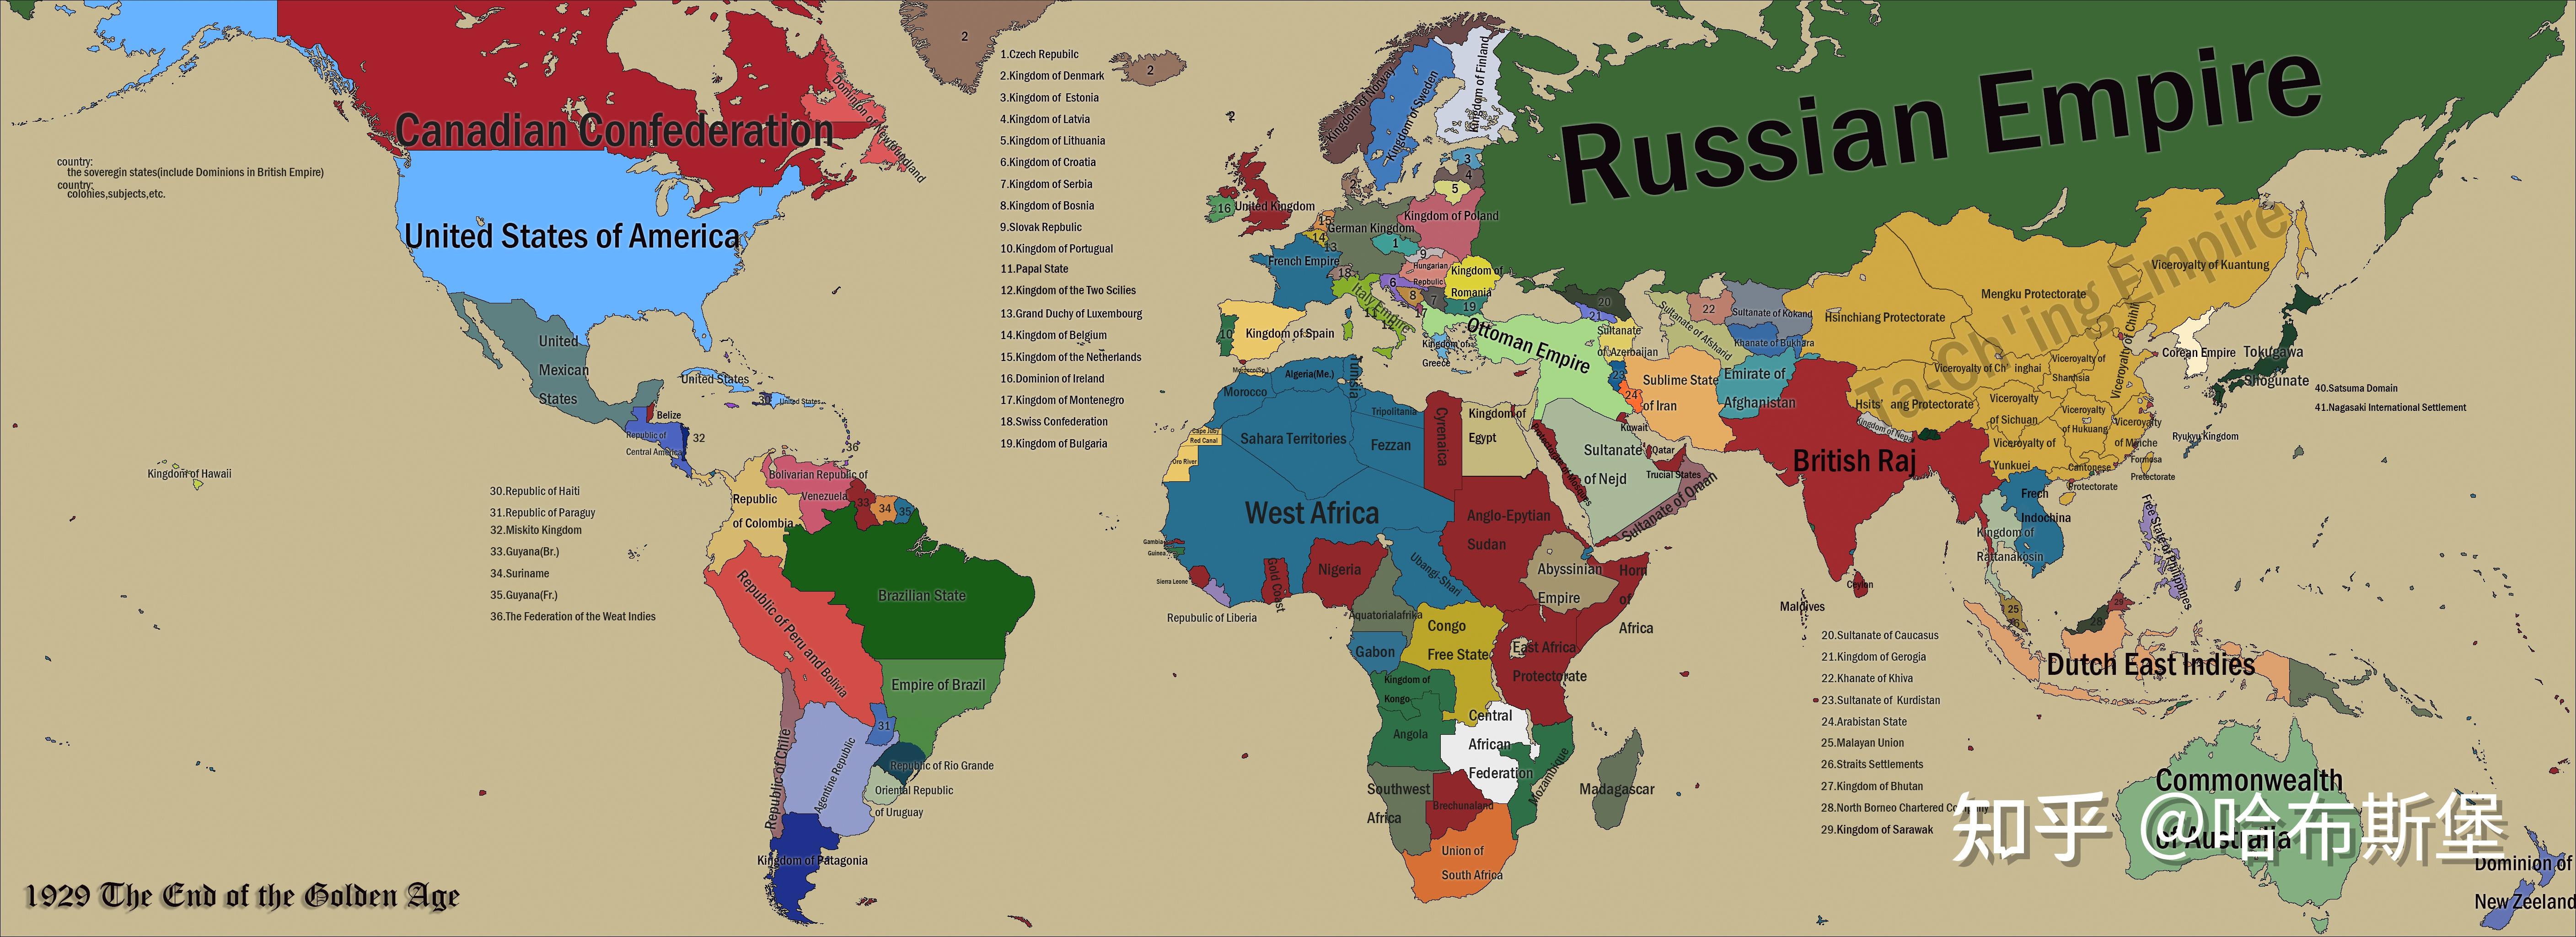 黄金时代(golden era)世界地图以及目录